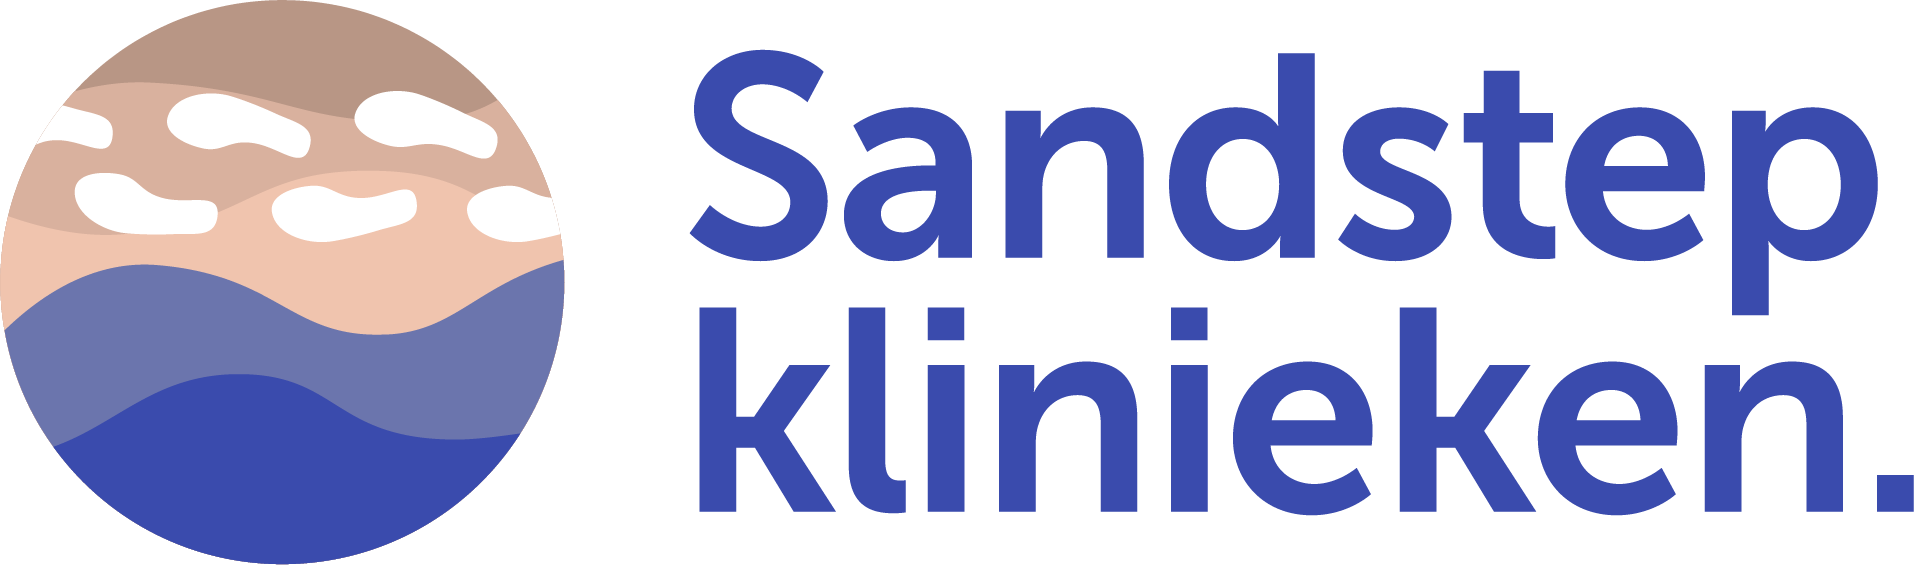 Sandstep Healthcare